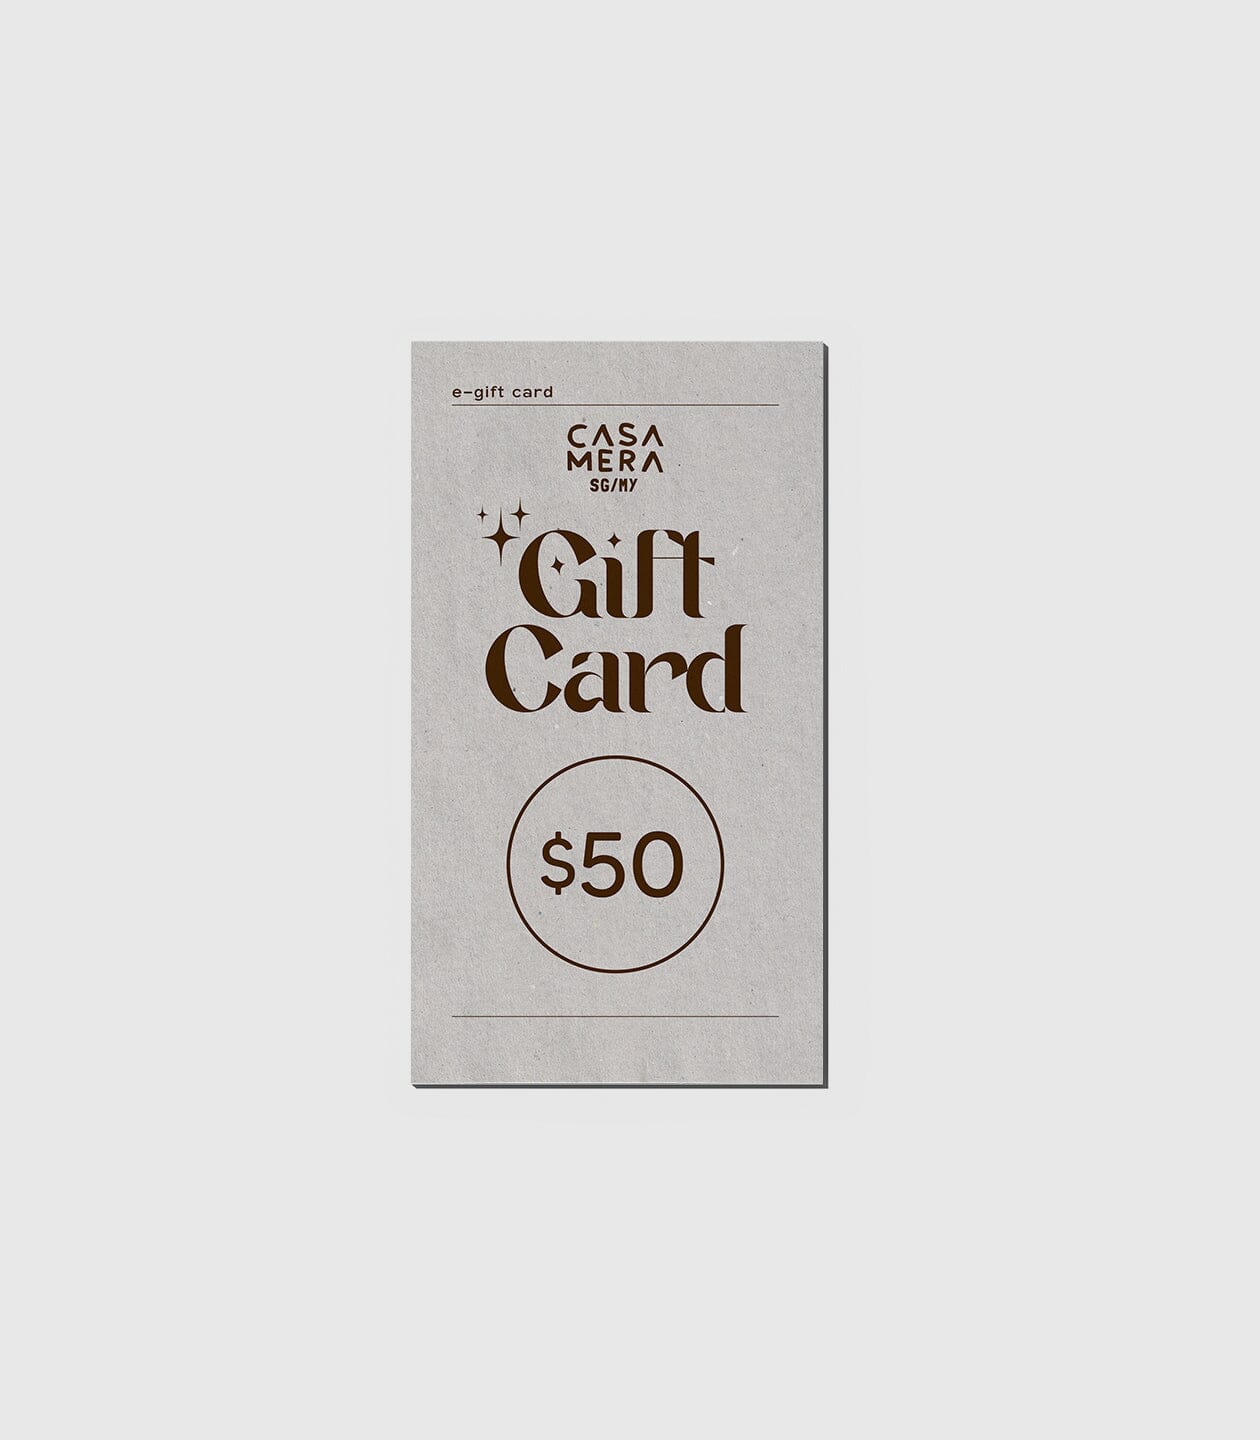 Gift Card casamerasg $50.00 